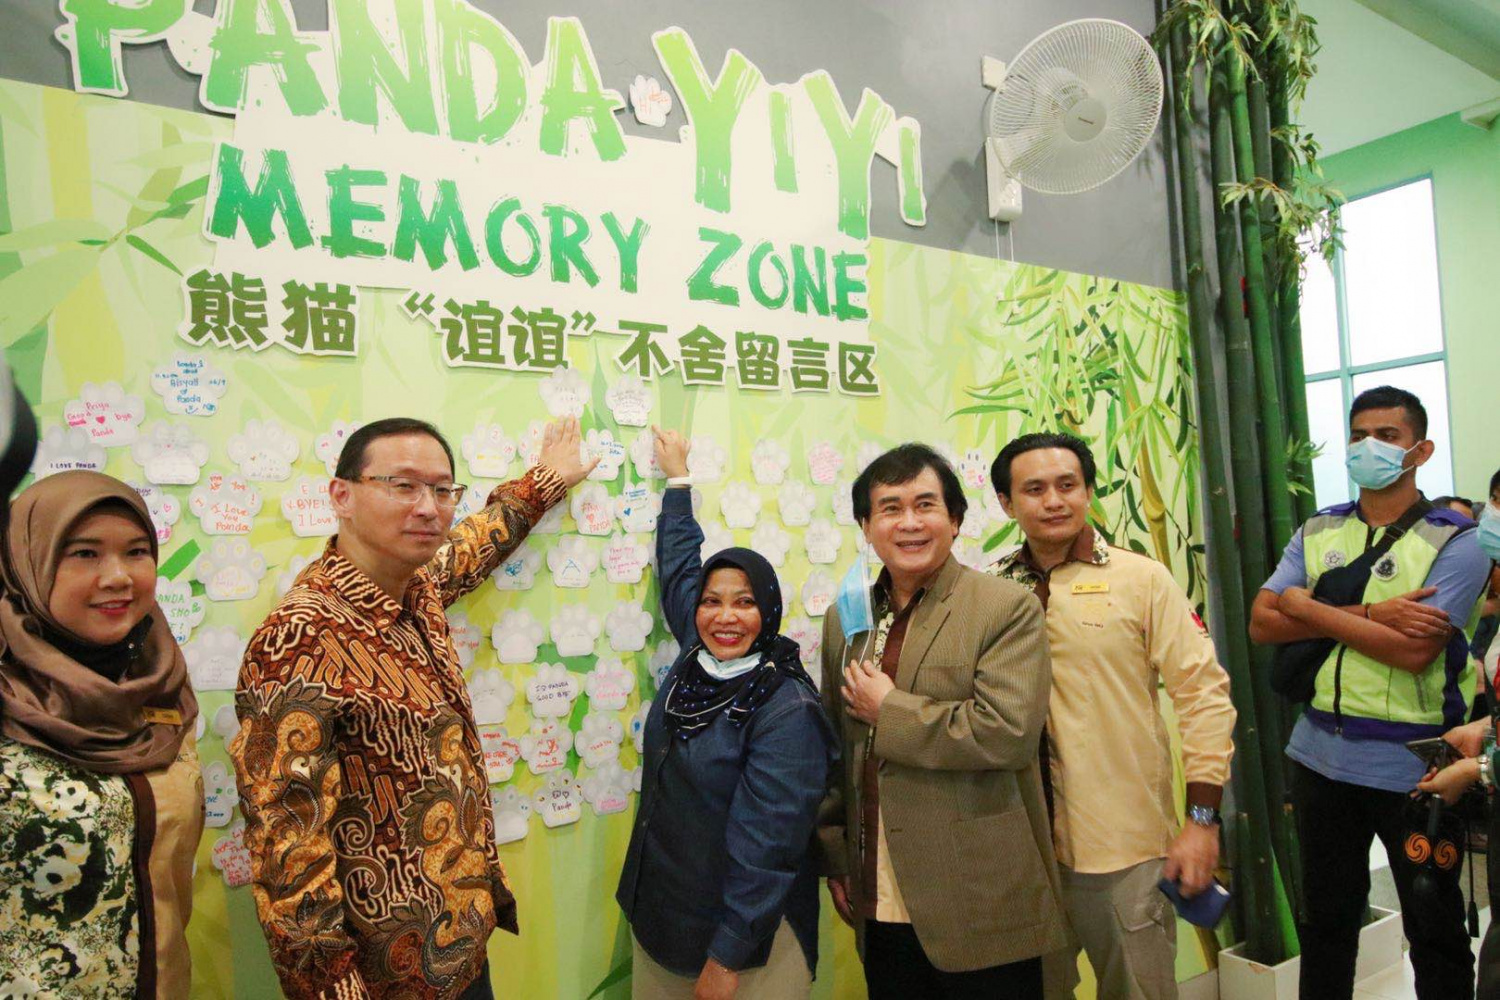 唐锐（左二）、马来西亚旅游、艺术和文化部副秘书长萨拉娅（左三）等嘉宾为即将返回中国的大熊猫“谊谊”留言献上祝福。